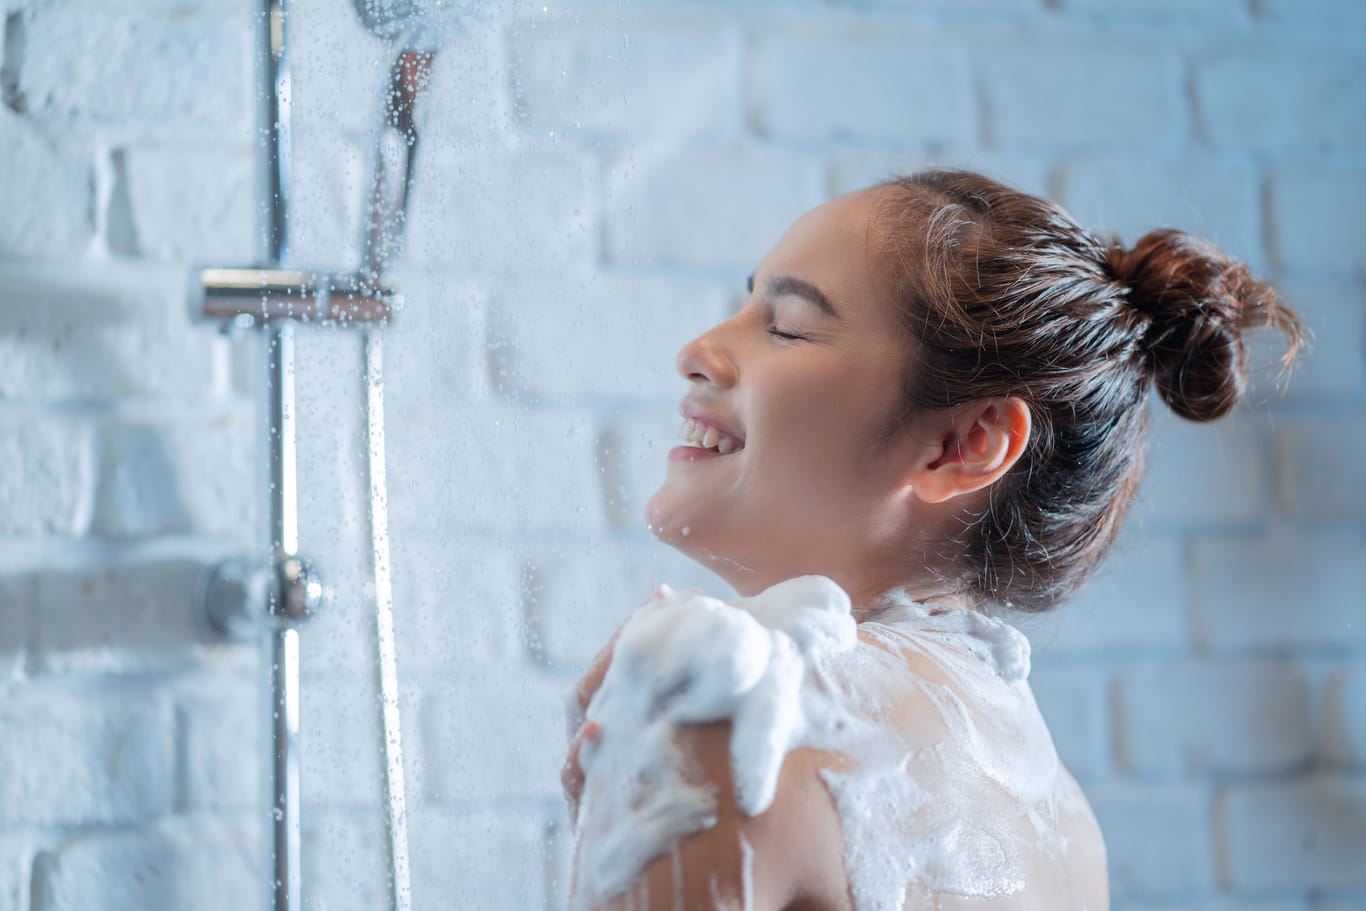 "Öko-Test" untersucht 19 Duschschäume – die meisten sind empfehlenswert.